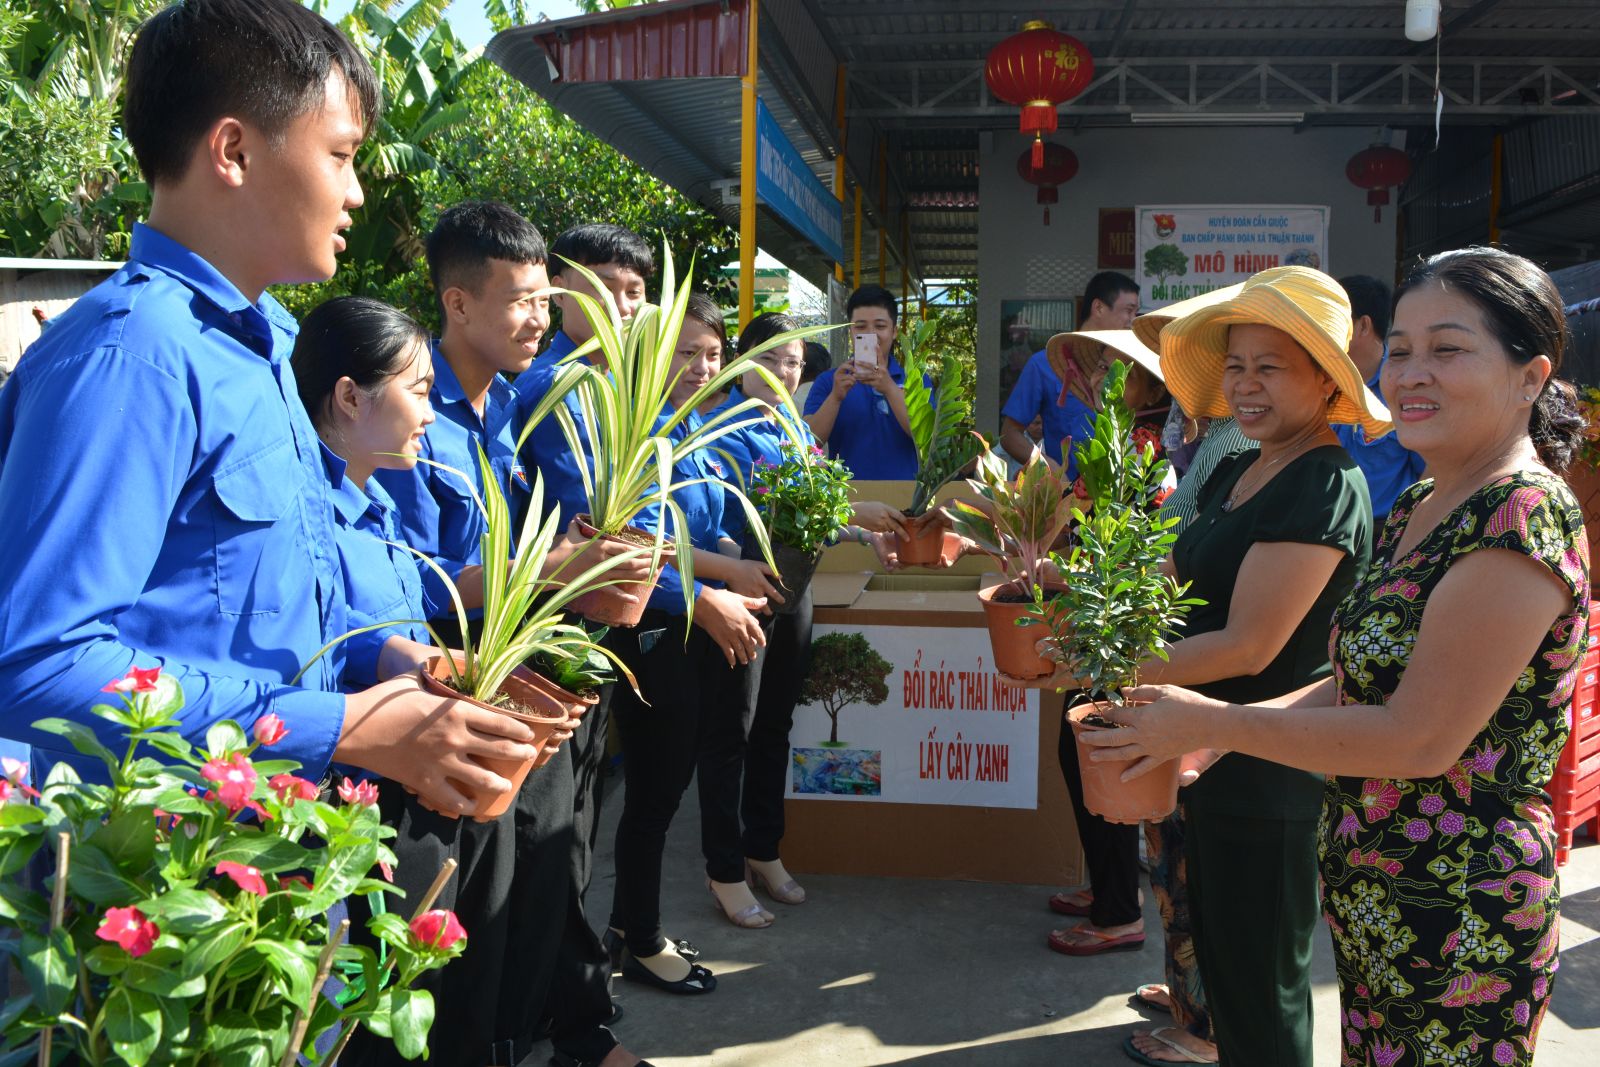 Mô hình Đổi rác thải nhựa lấy cây xanh của Đoàn Thanh niên xã Thuận Thành